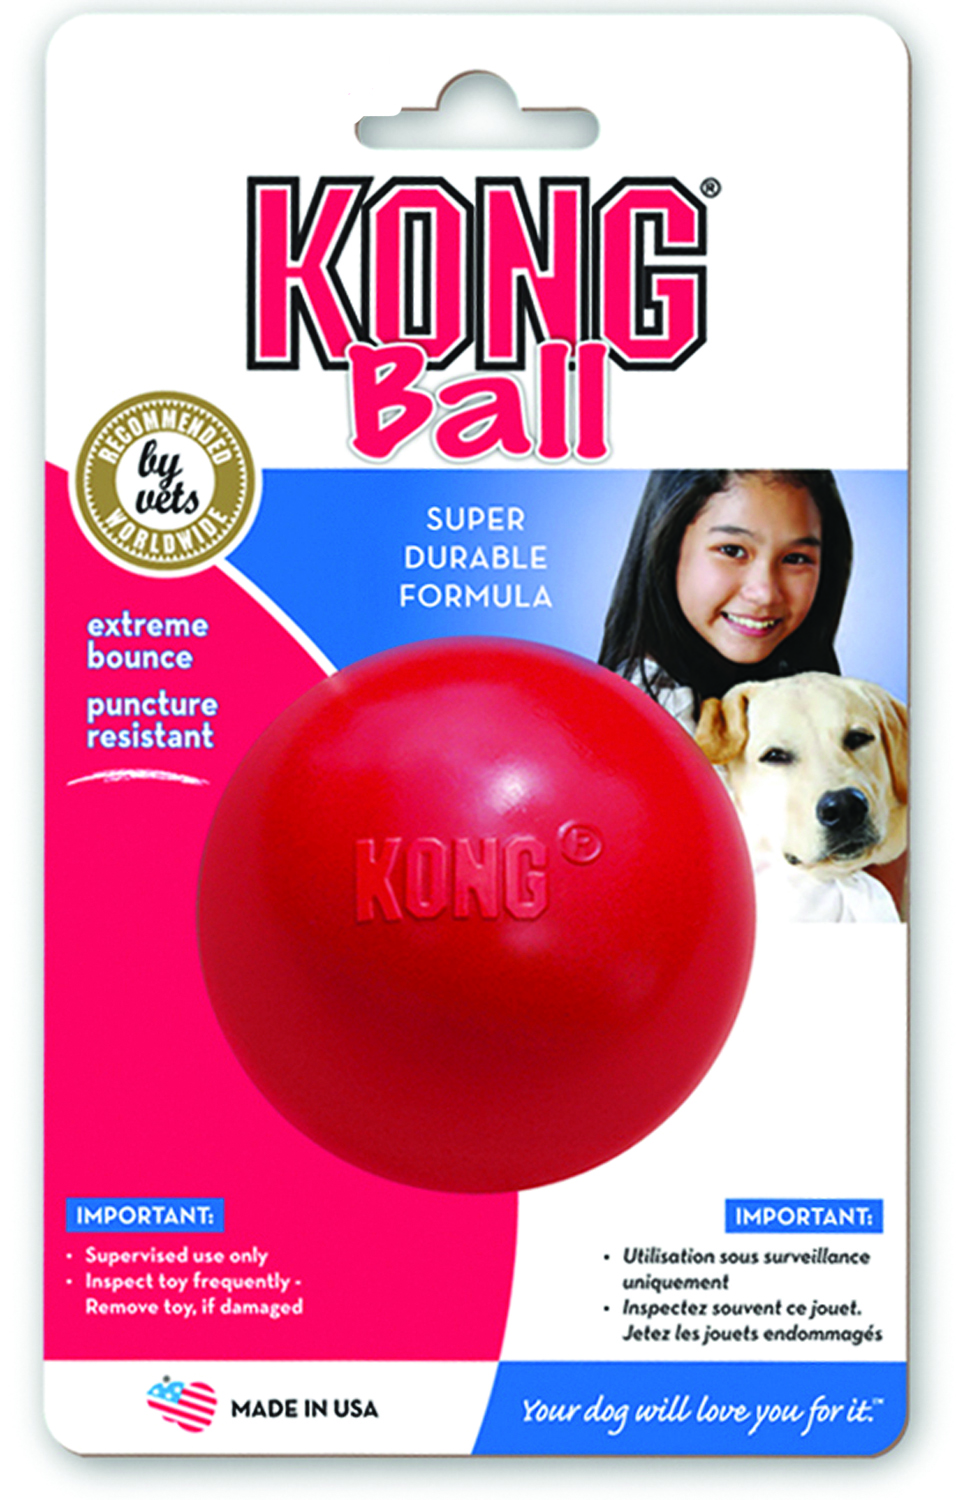 Large Kong ball